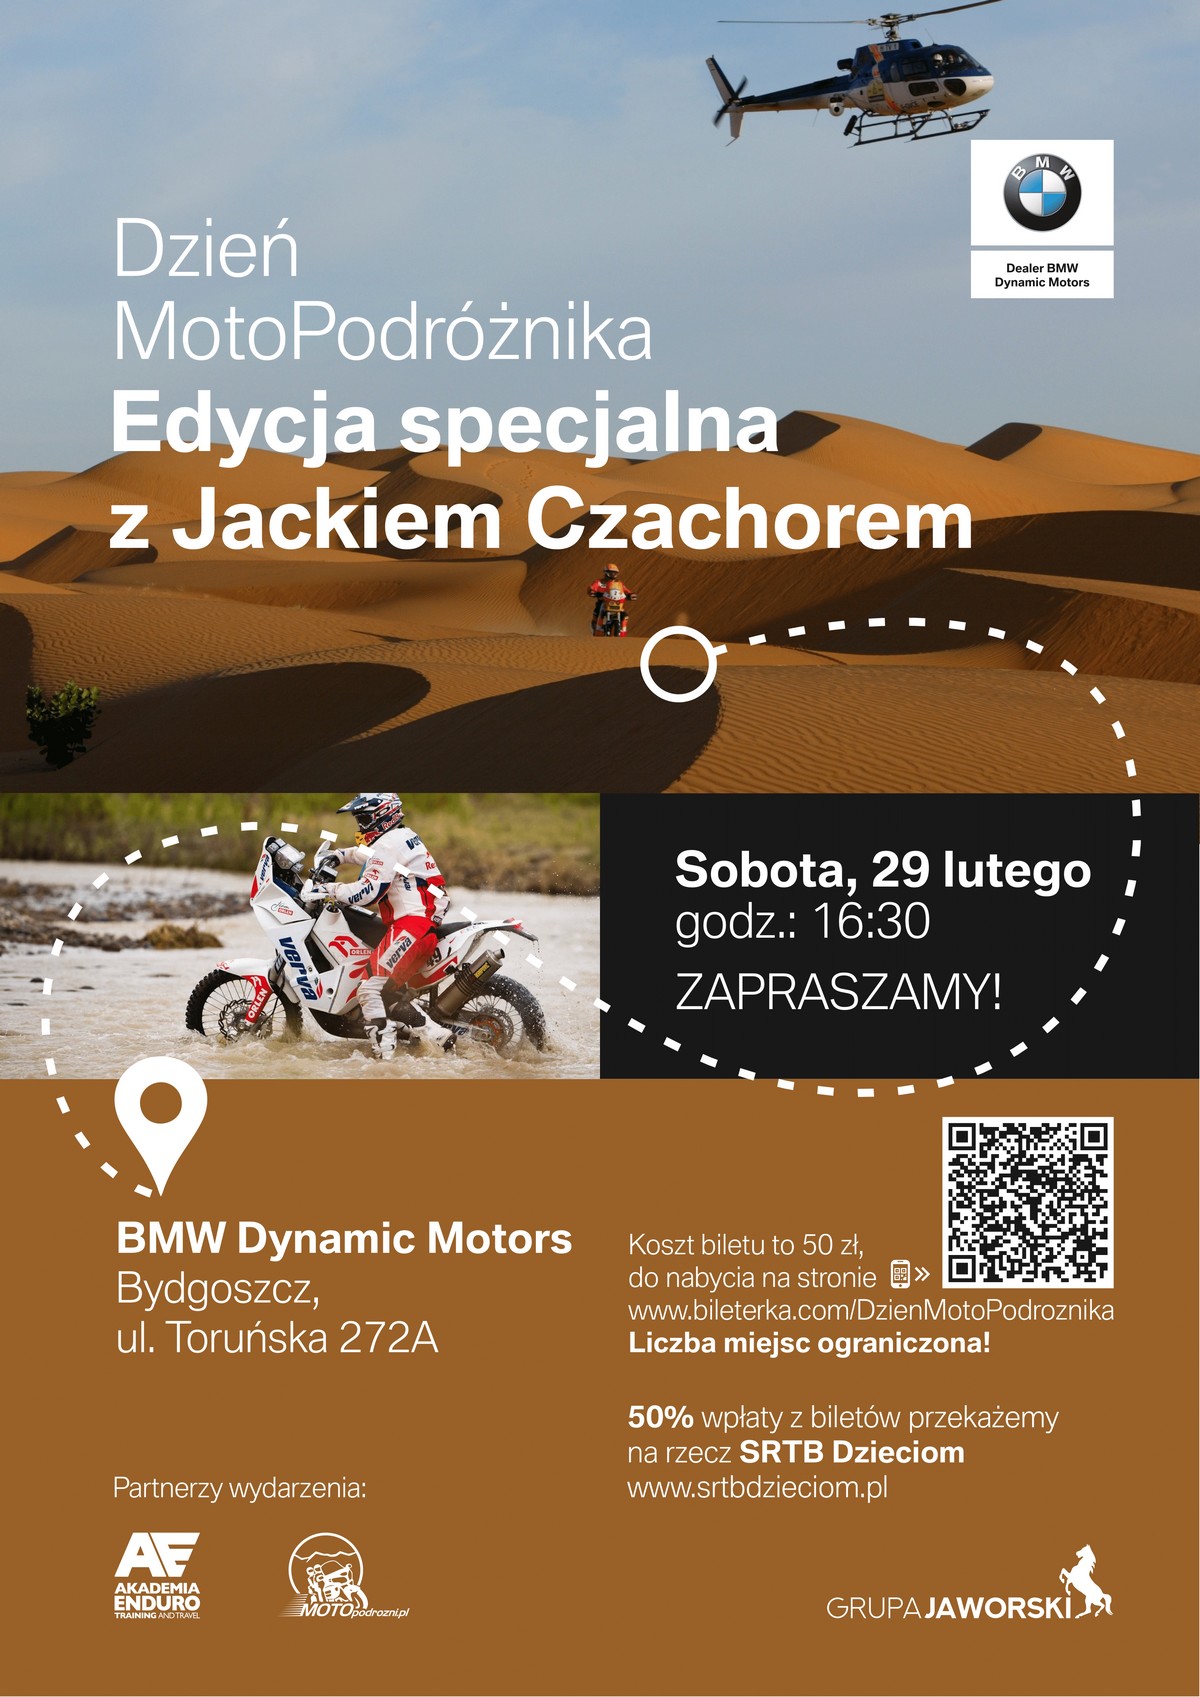 Dzień MotoPodróżnika - Edycja specjalna z Jackiem Czachorem